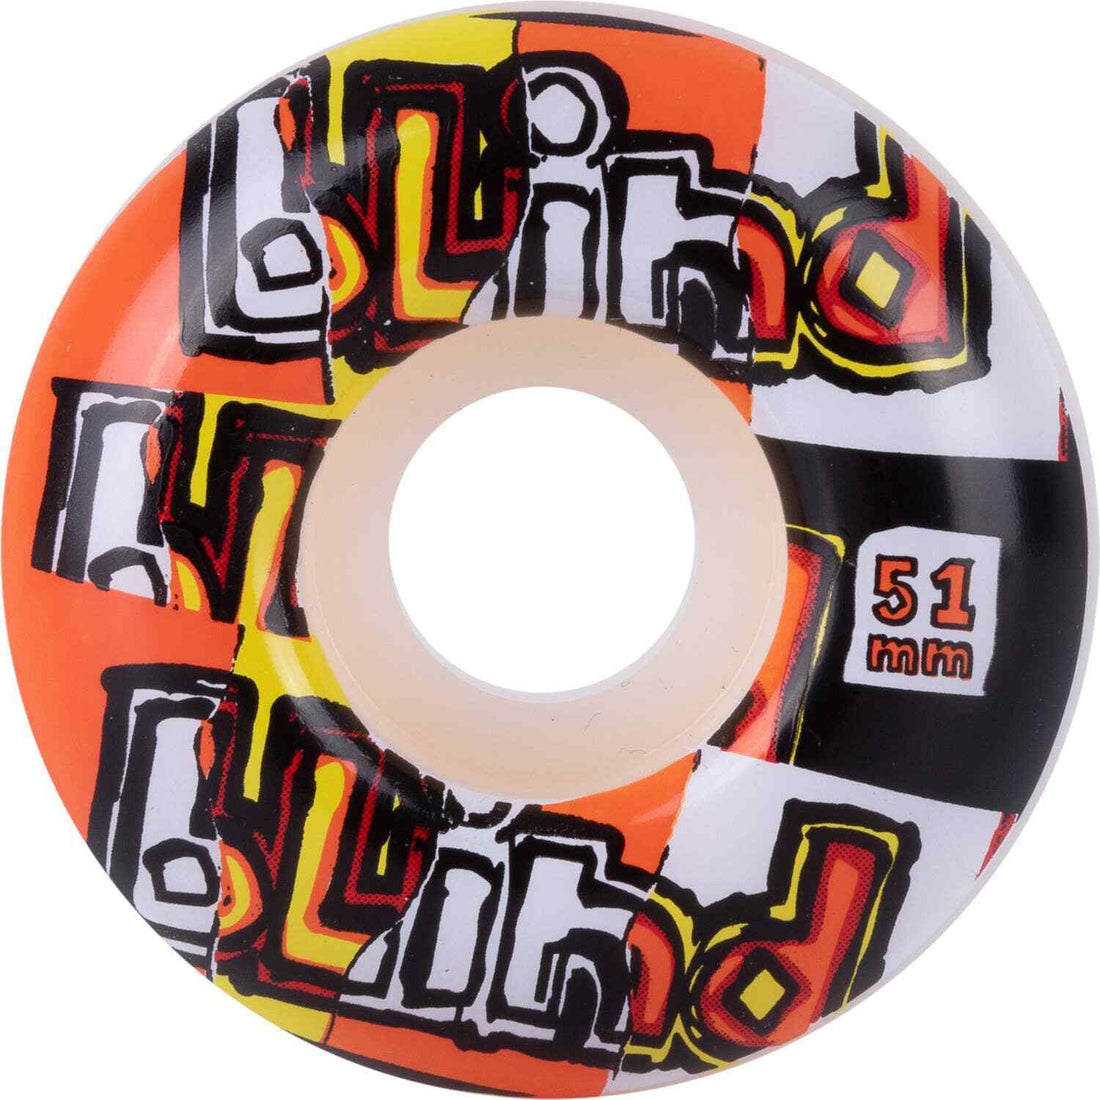 Blind OG Ripped Skateboard Wheels Red Orange 51mm